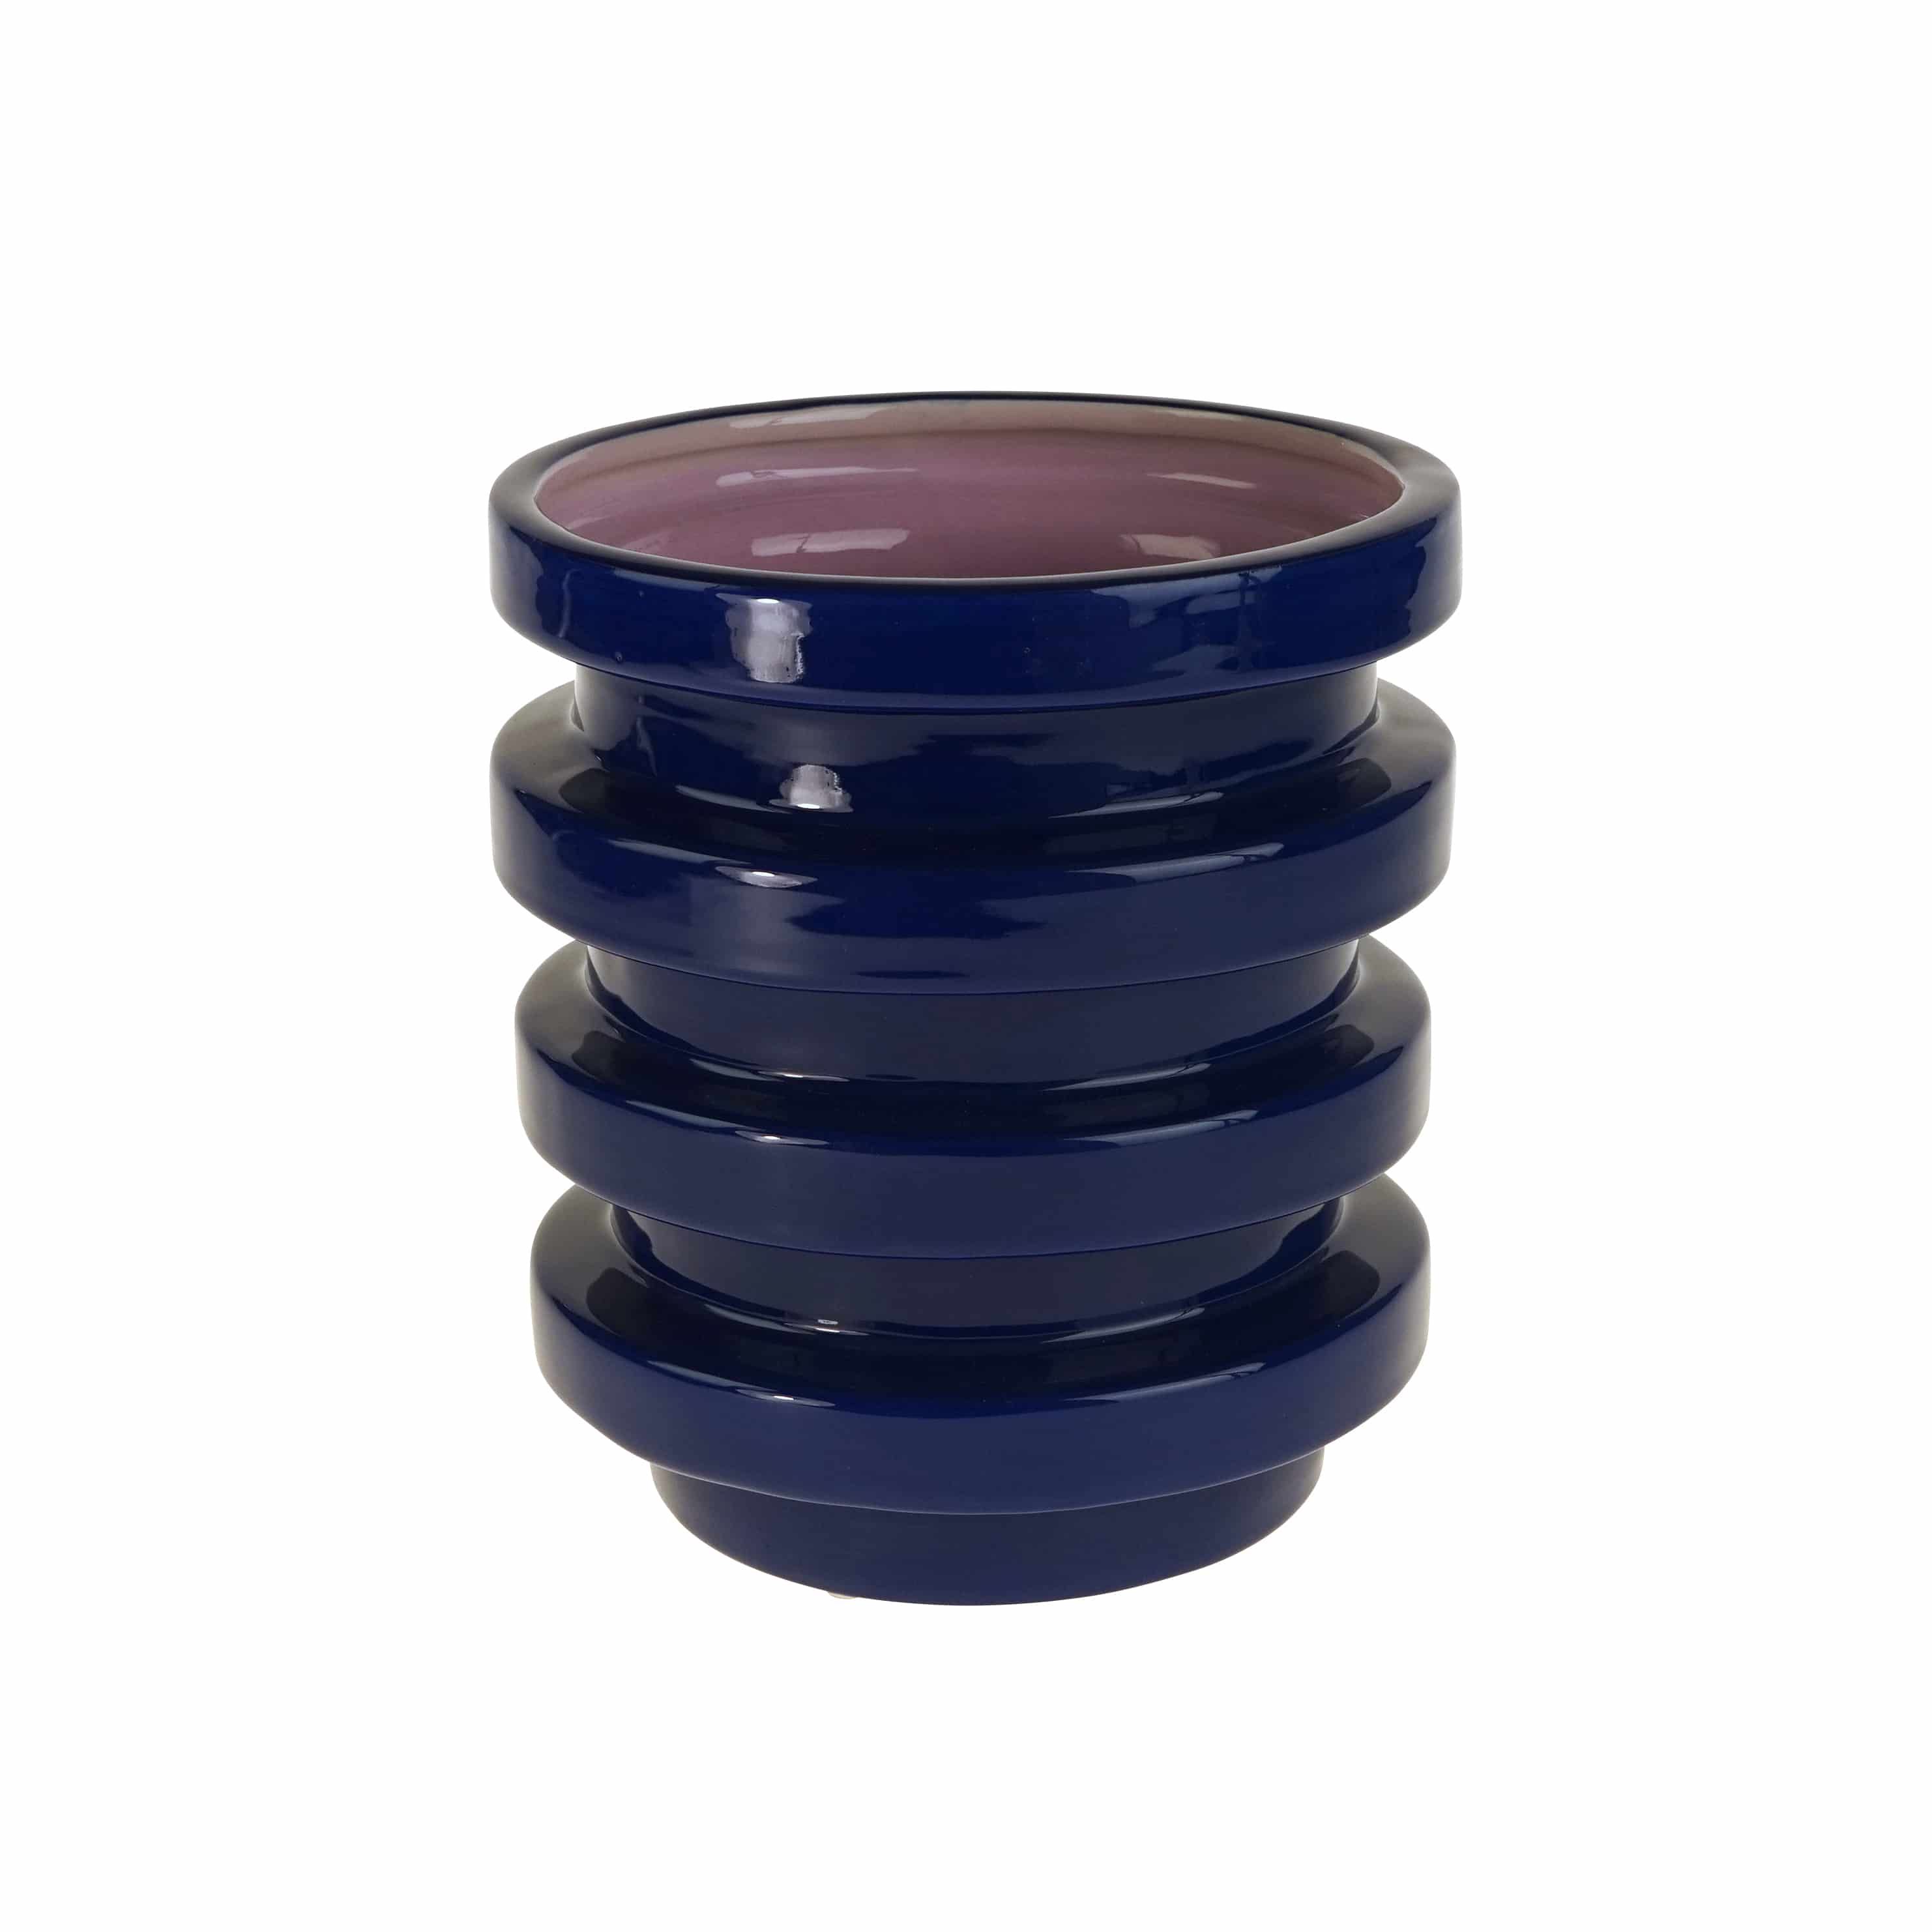 Vase Geometric, blue-purple, hand-painted